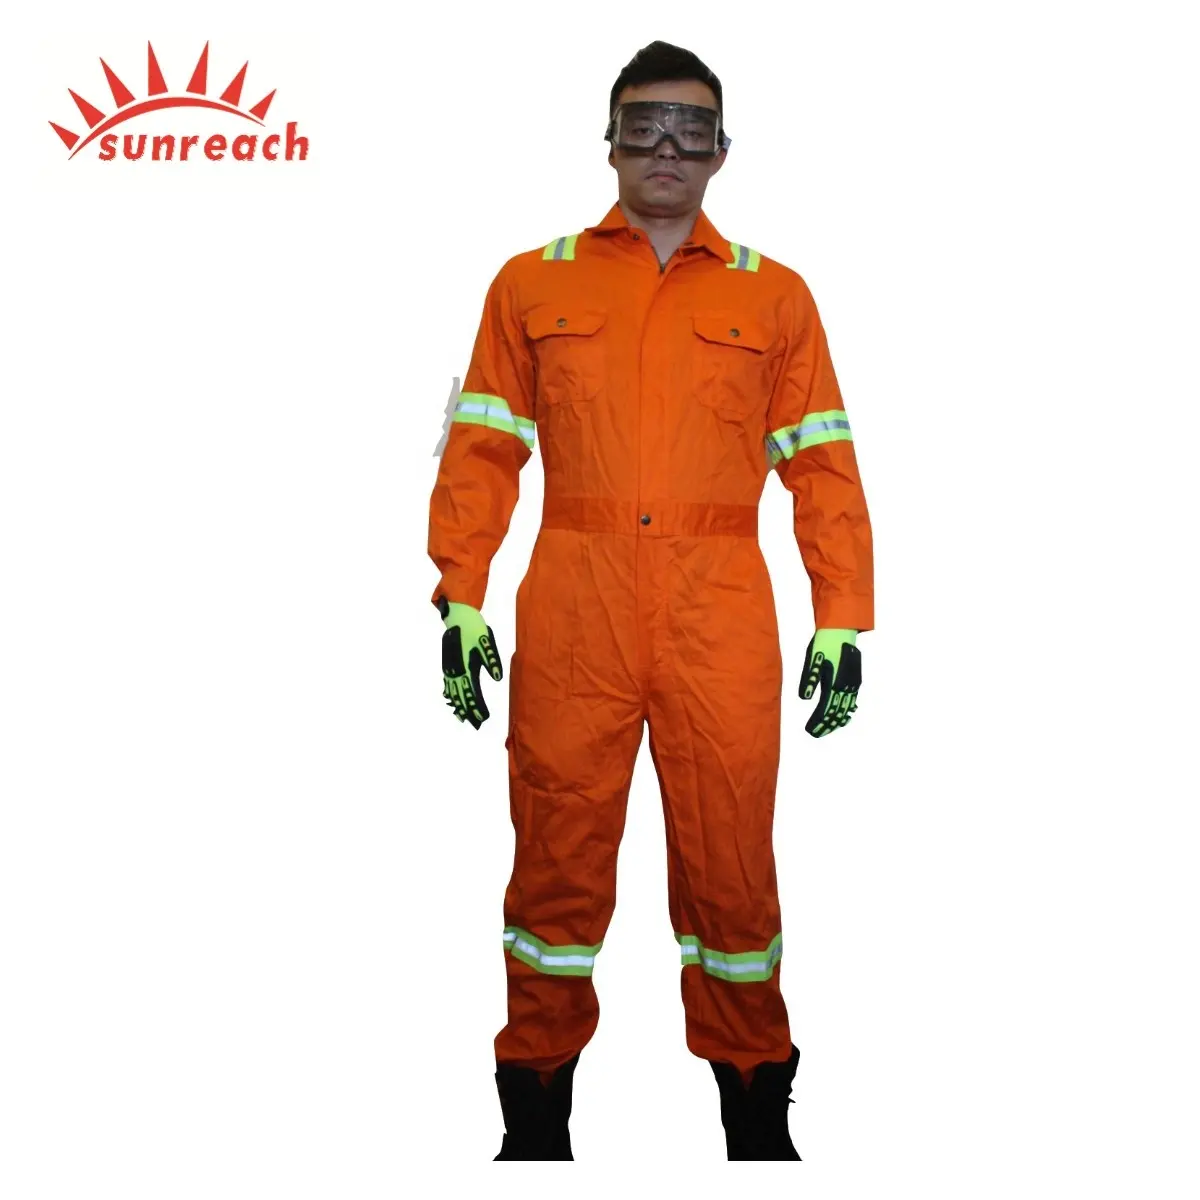 तेल क्षेत्र के लिए एनएफपीए प्रमाणित अग्निशमन सूट वर्दी